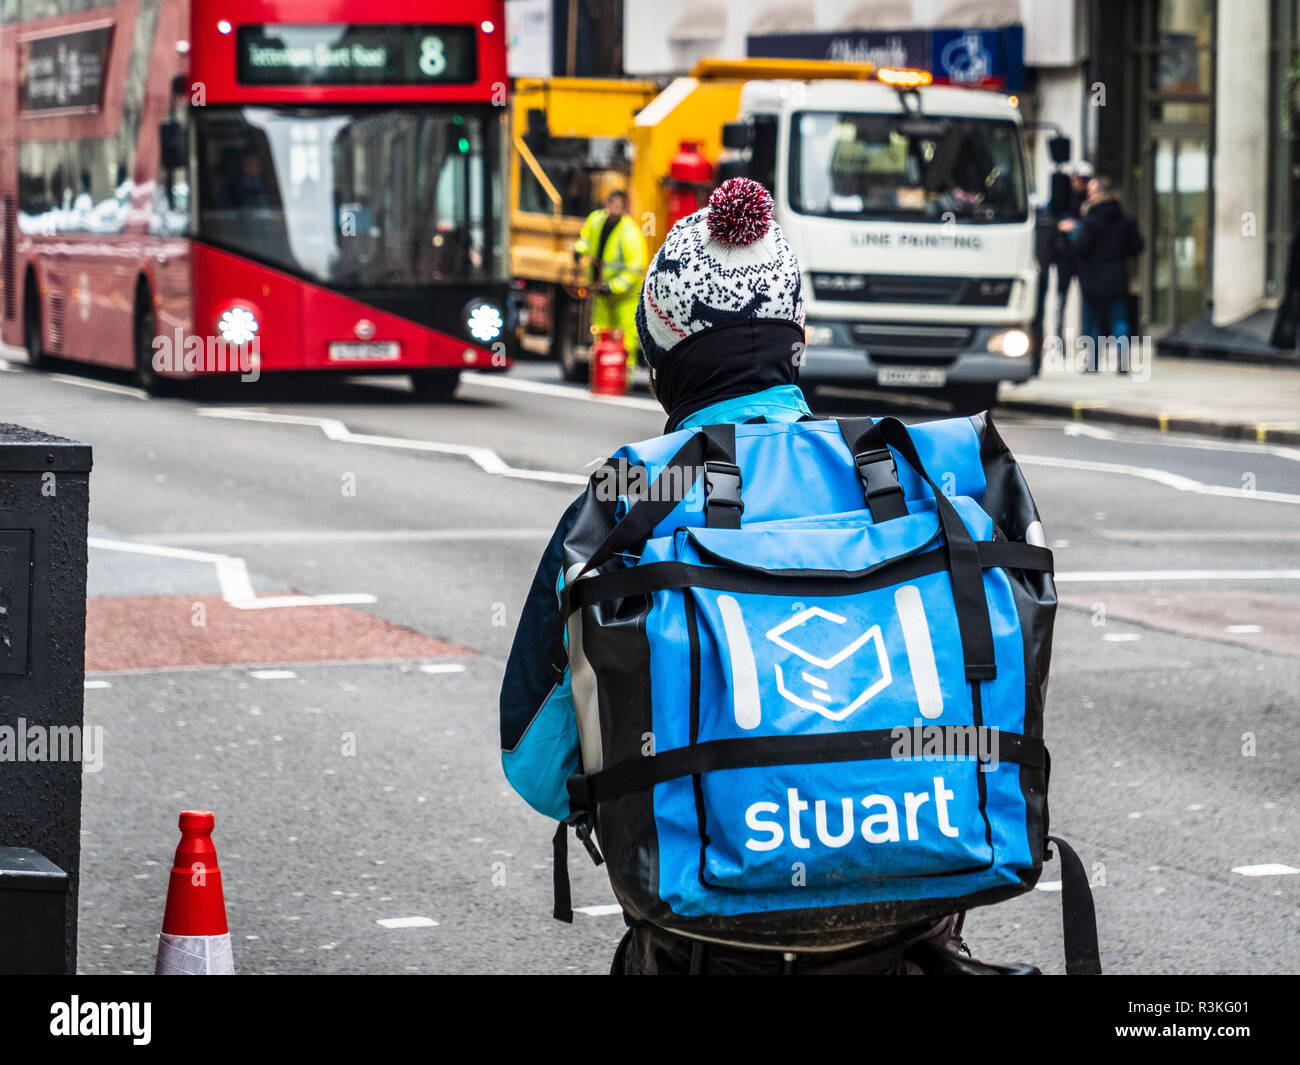 Una società di Stuart Consegna del cibo courier passeggiate attraverso le vie di londra, Stuart è in concorrenza con Deliveroo e Uber mangia in questo mercato competitivo Foto Stock